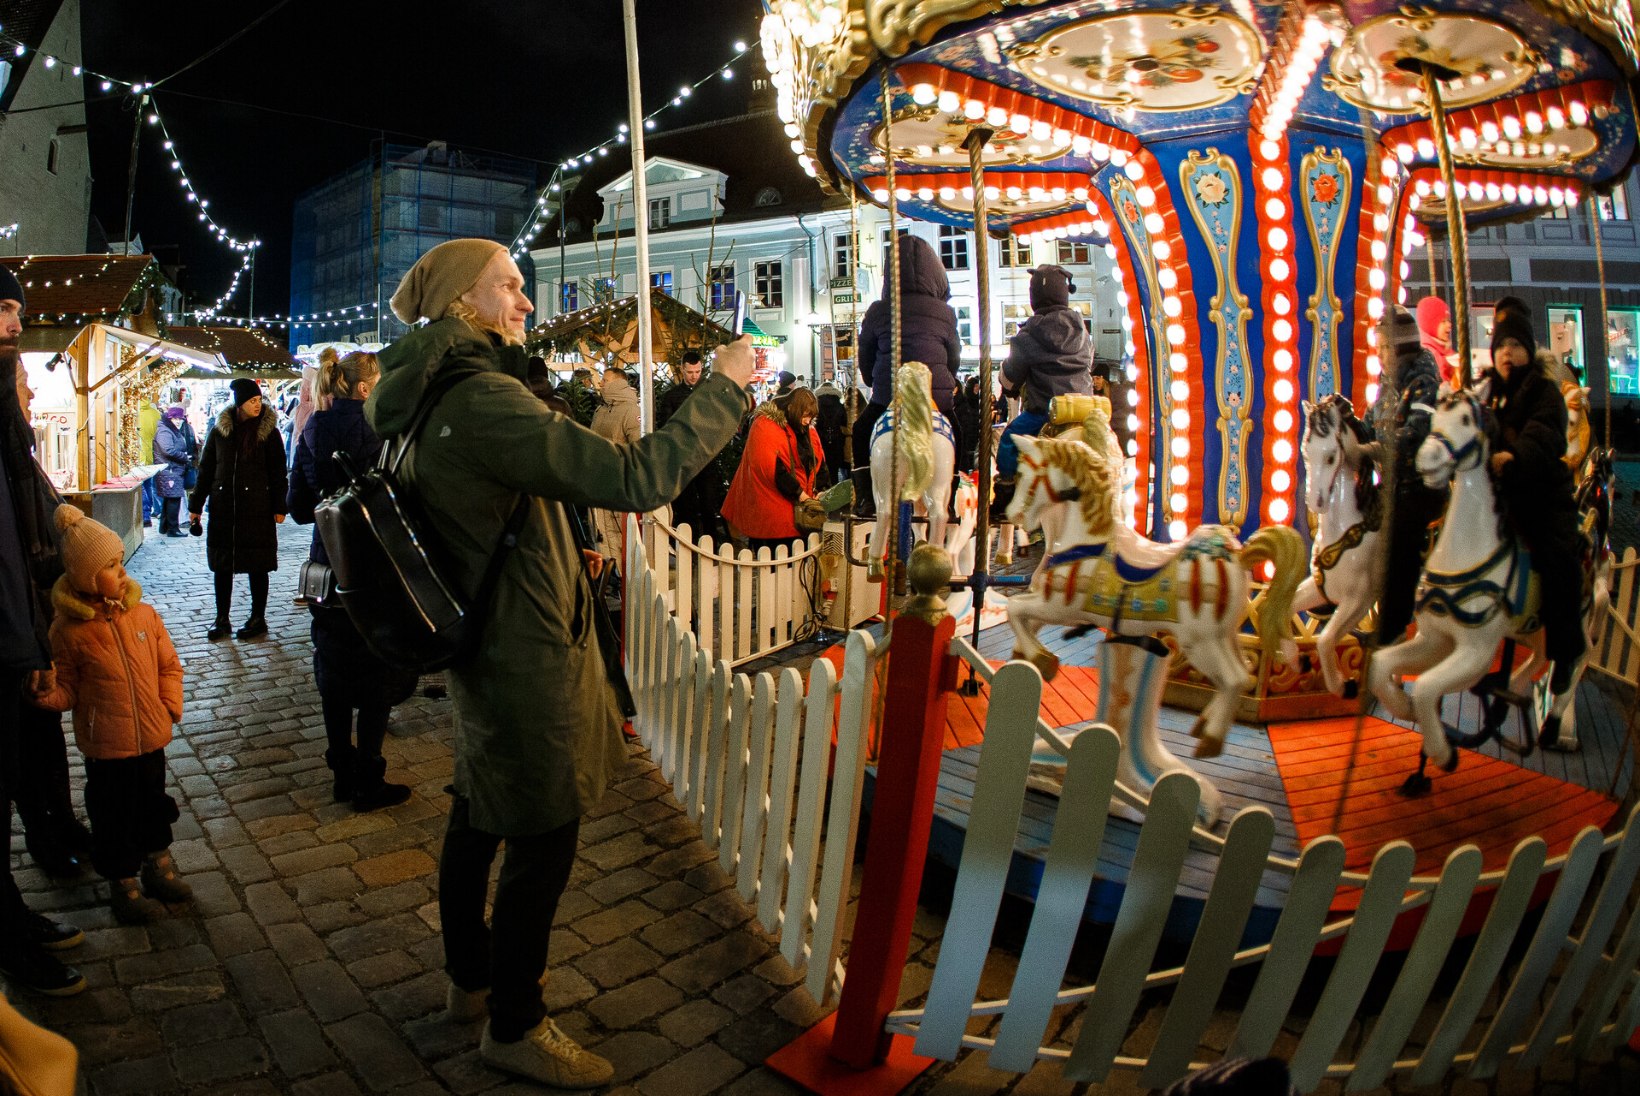 HINNATUD JA KAUNIKENE: Tallinna jõuluturg jõudis Euroopa paremate sekka